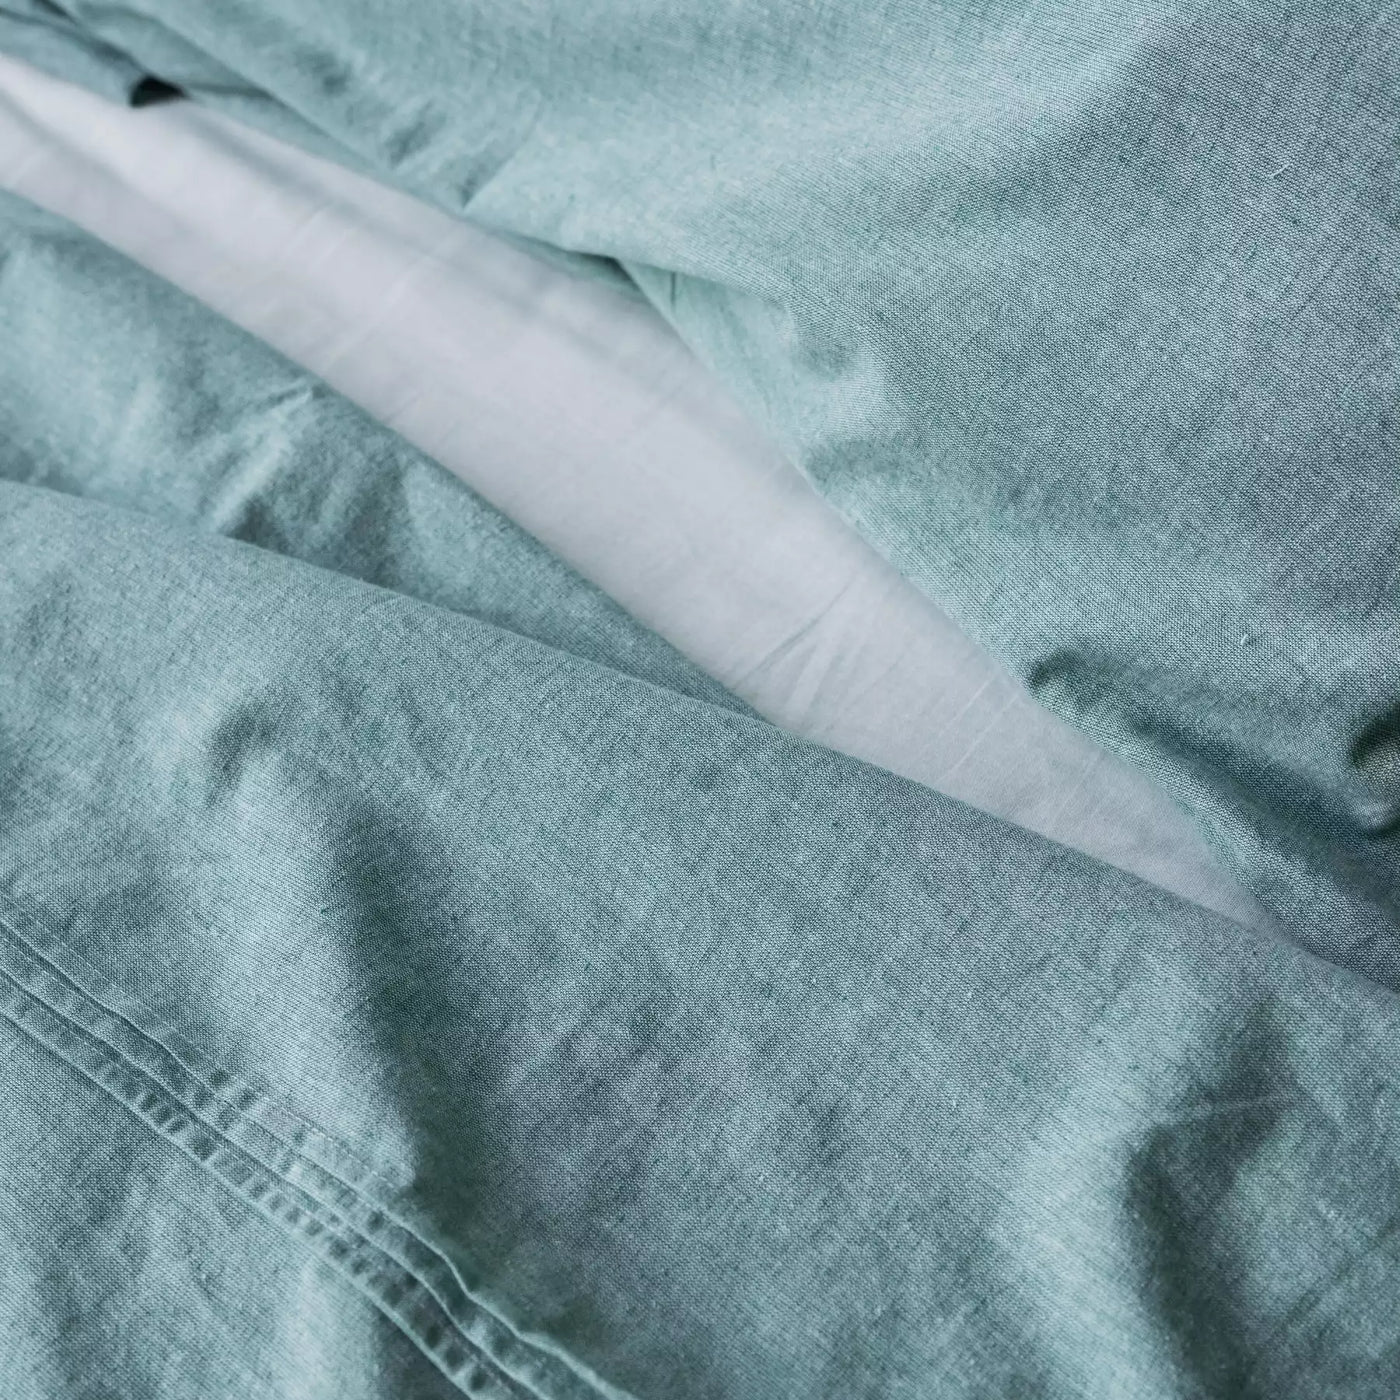 Juego de cama de lino y algodón con funda nórdica de 135x200 en Mint Melange